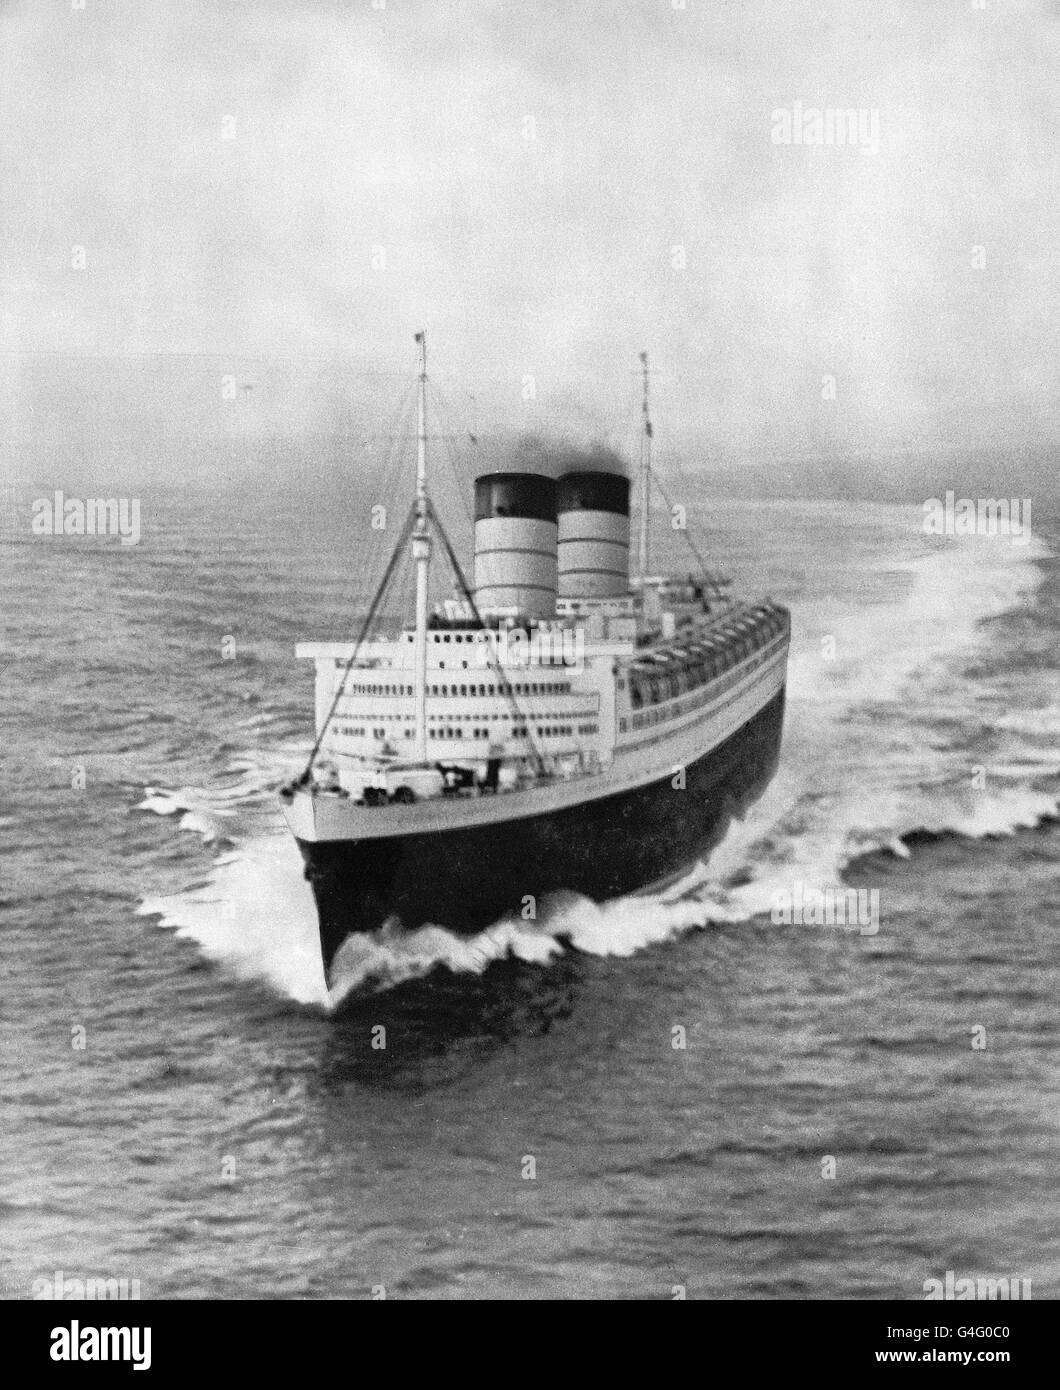 Con la Reina y las dos Princesas a bordo, la línea de 85,000 toneladas de Cunard White Star 'Queen Elizabeth' está experimentando sus pruebas oficiales de velocidad frente a la costa norte de Arran (Escocia). La Reina Isabel navegará el primero de sus cruces quincenales de Southampton a Nueva York como un barco de pasajeros. Foto de stock